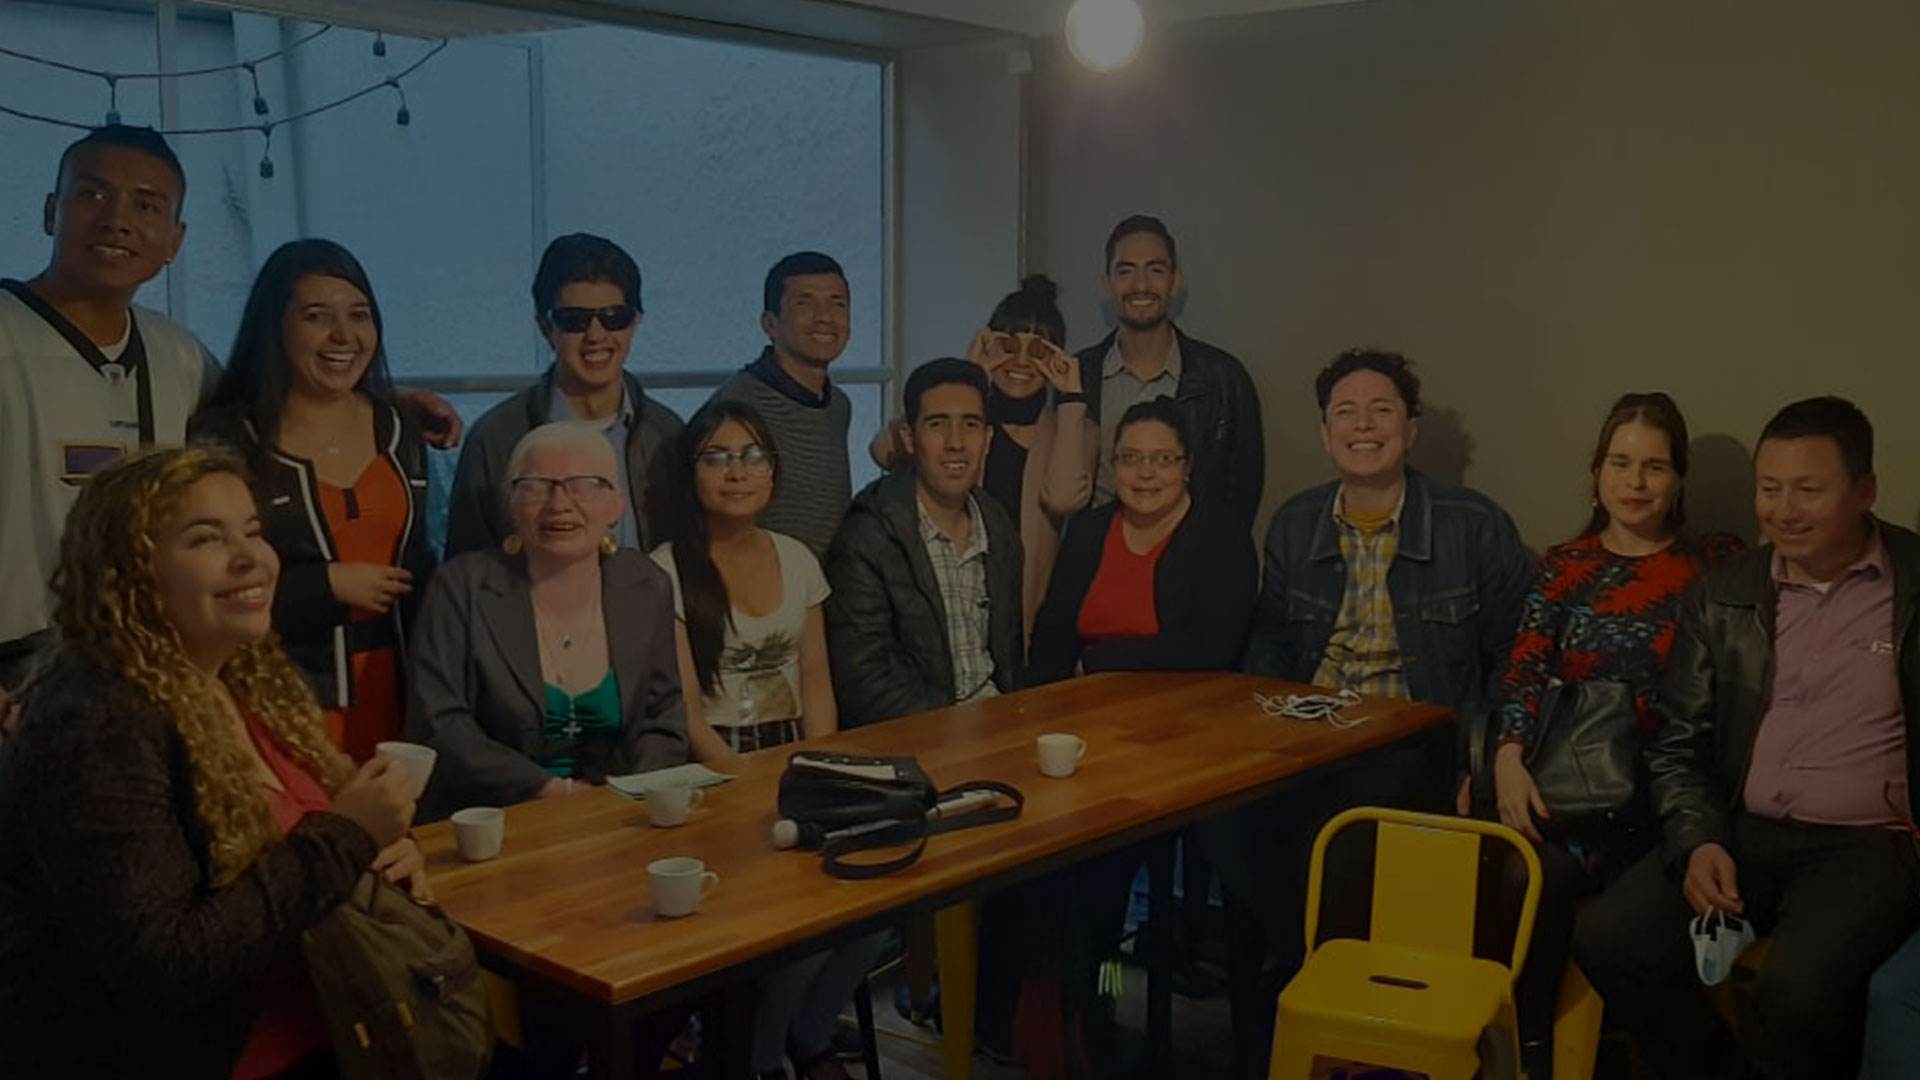 Fotografía del equipo de Café a ciegas junto a algunos invitados en una degustación.